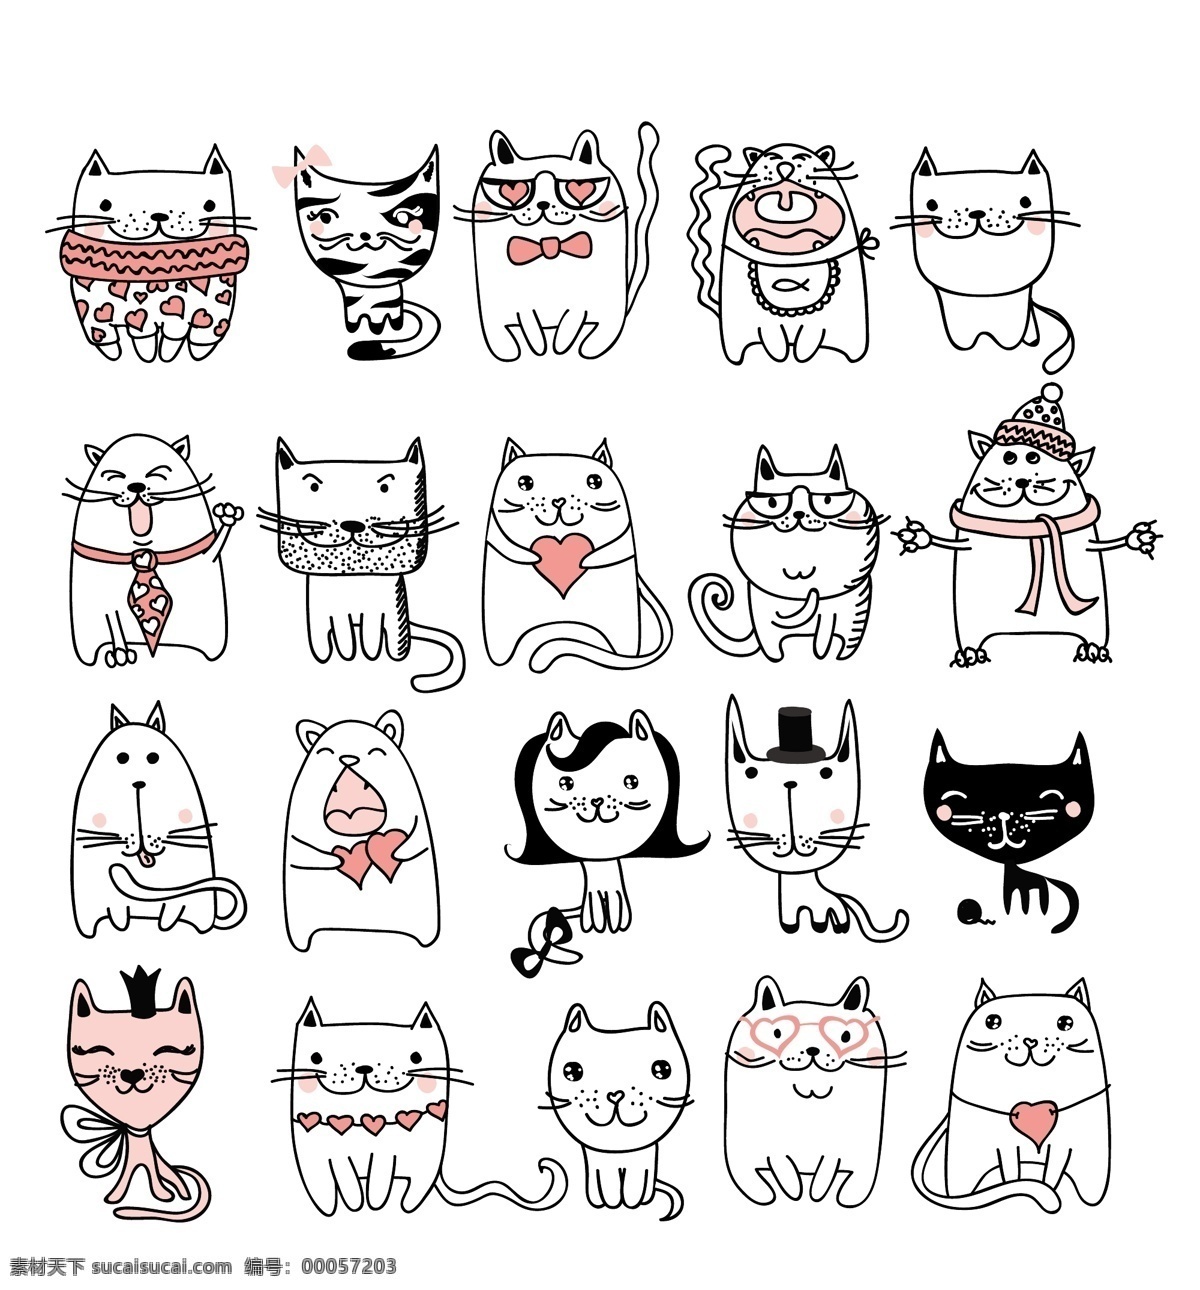 猫咪图片 猫咪 卡通猫咪 可爱猫咪 北欧装饰画 手绘猫咪 猫咪插画 线描水彩猫咪 水墨小猫咪 印刷猫 小猫